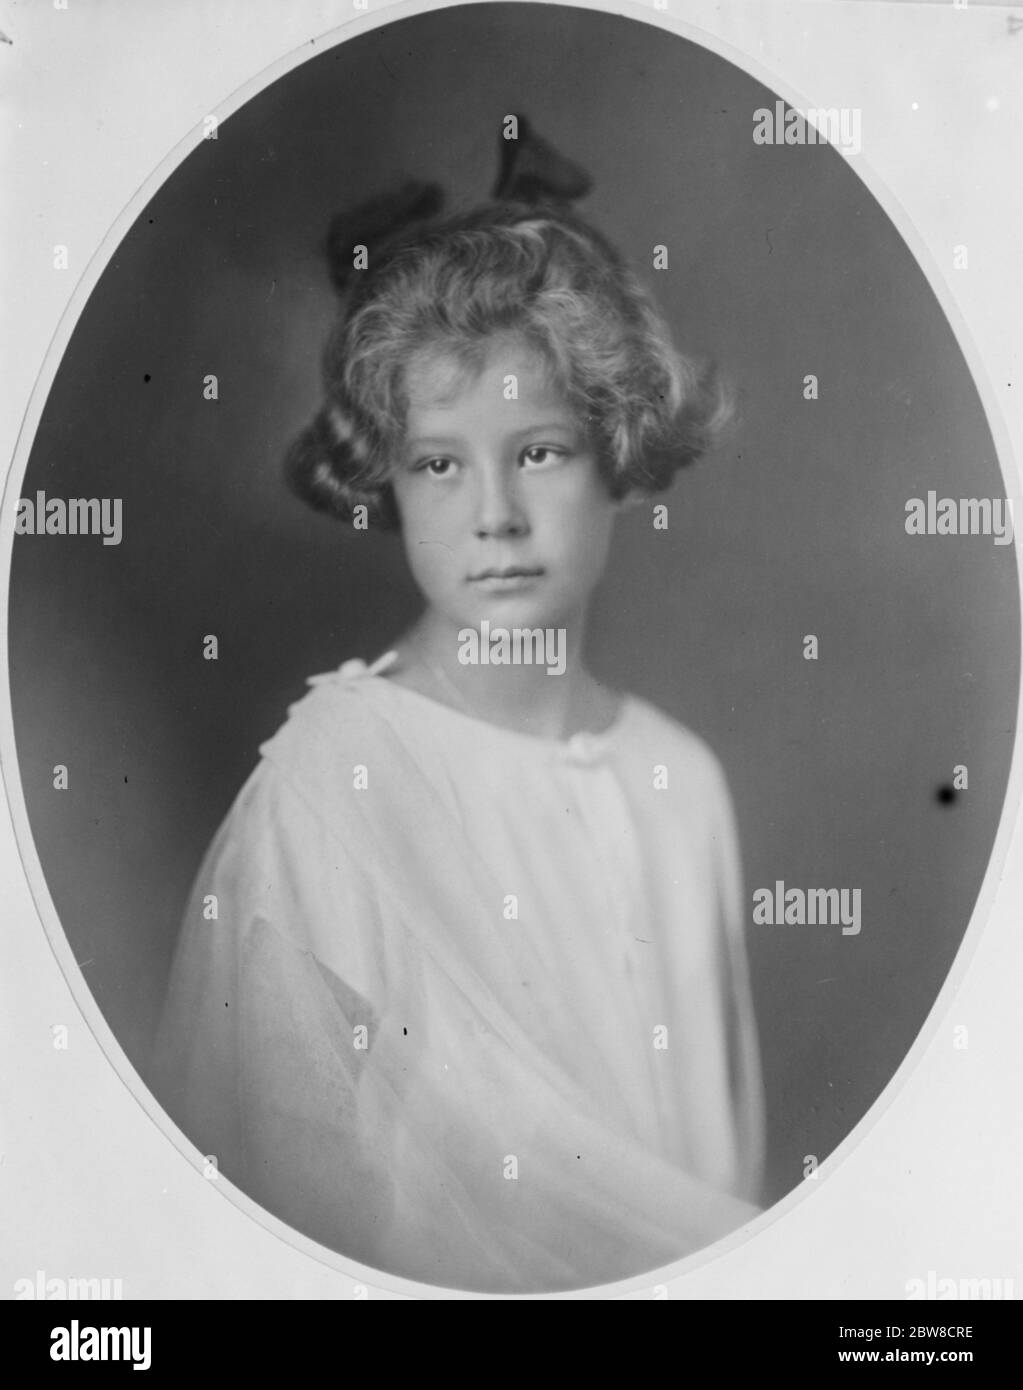 Princesa Alice de Borbón Parma , hija menor del príncipe Elie de Borbón Parma y de la archiduquesa Marie Anne de Austria . 21 de mayo de 1927 Foto de stock